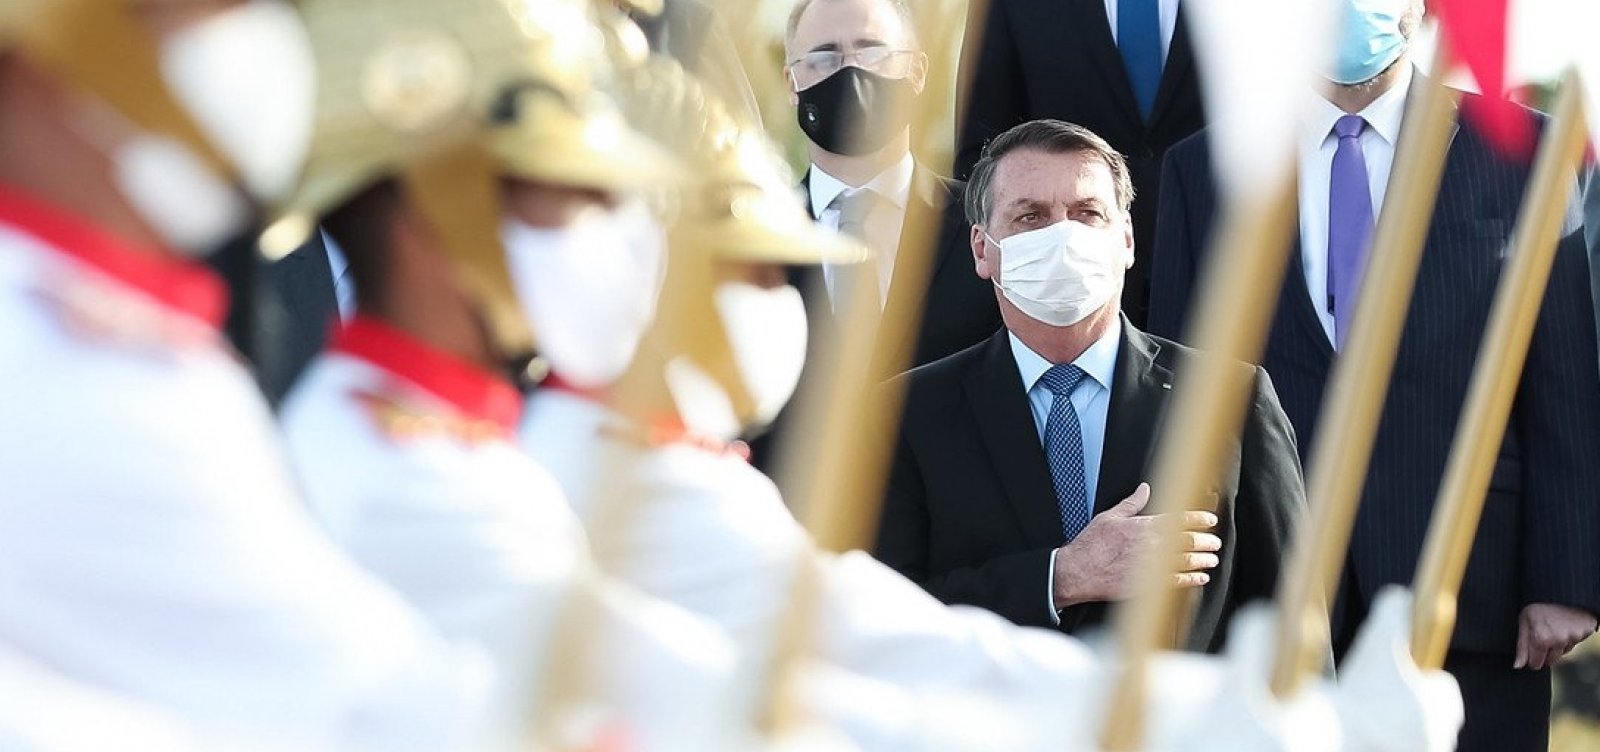 'Está chegando a hora de tudo ser colocado no devido lugar', ameaça Bolsonaro